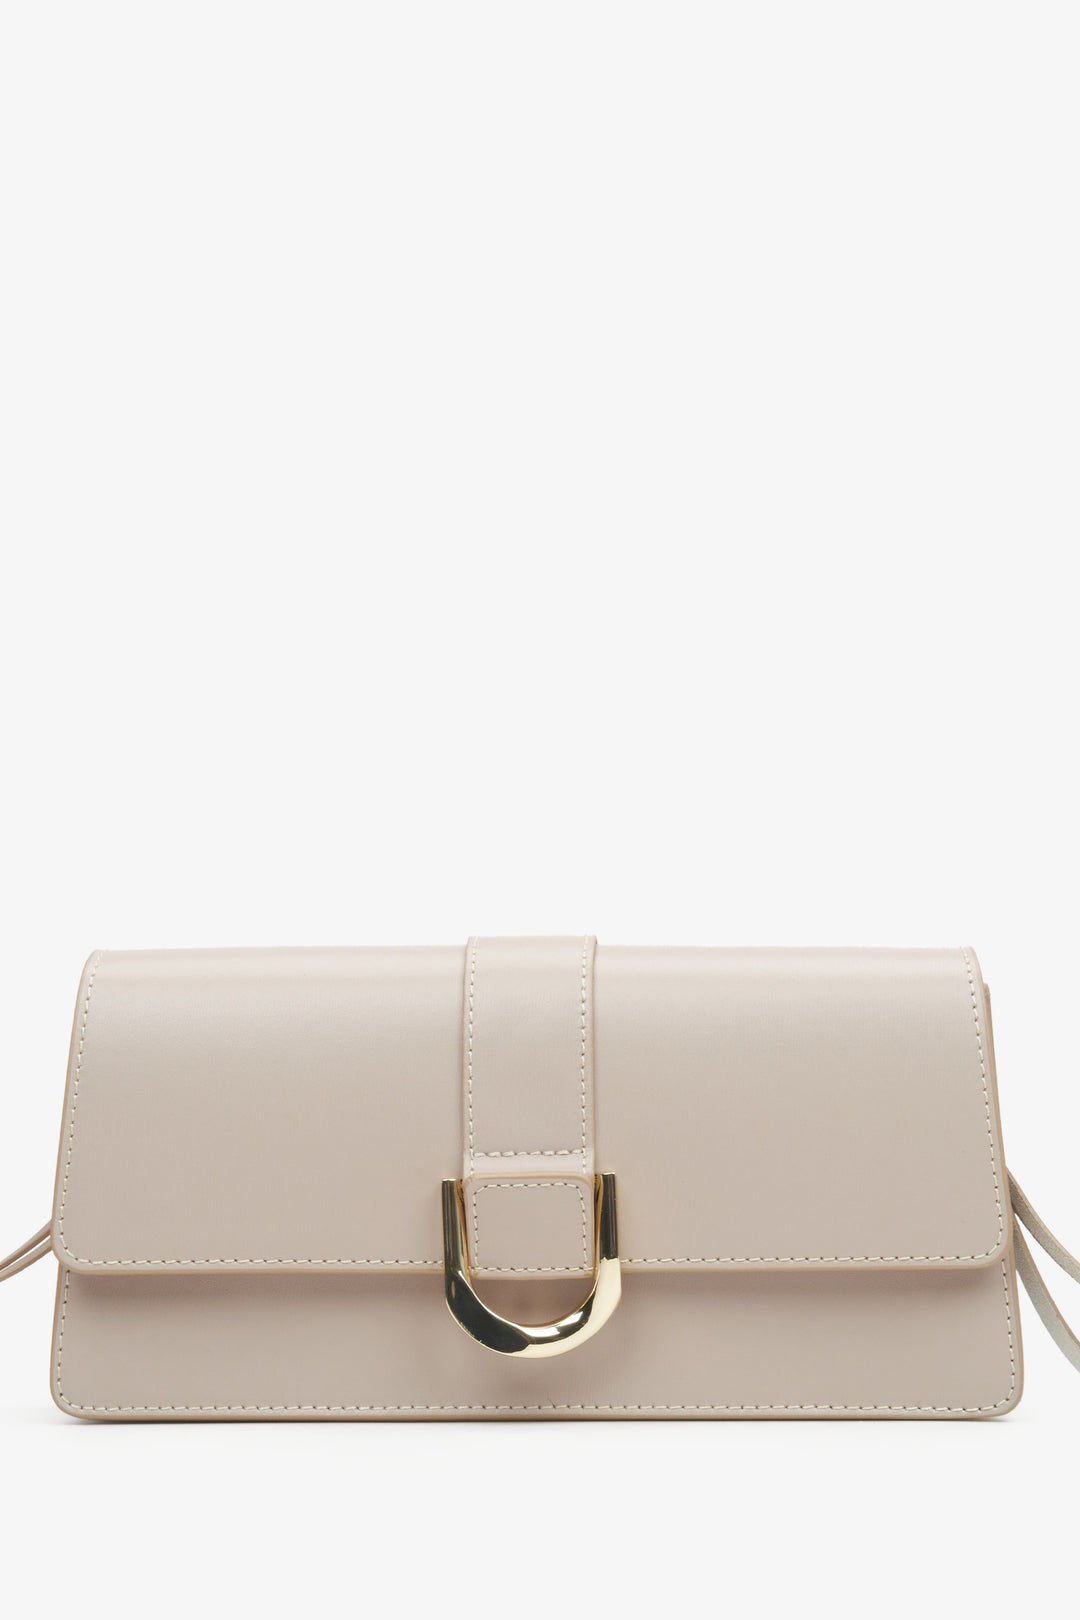 Women's Beige Leather Handbag with Golden Accents Estro ER00114773